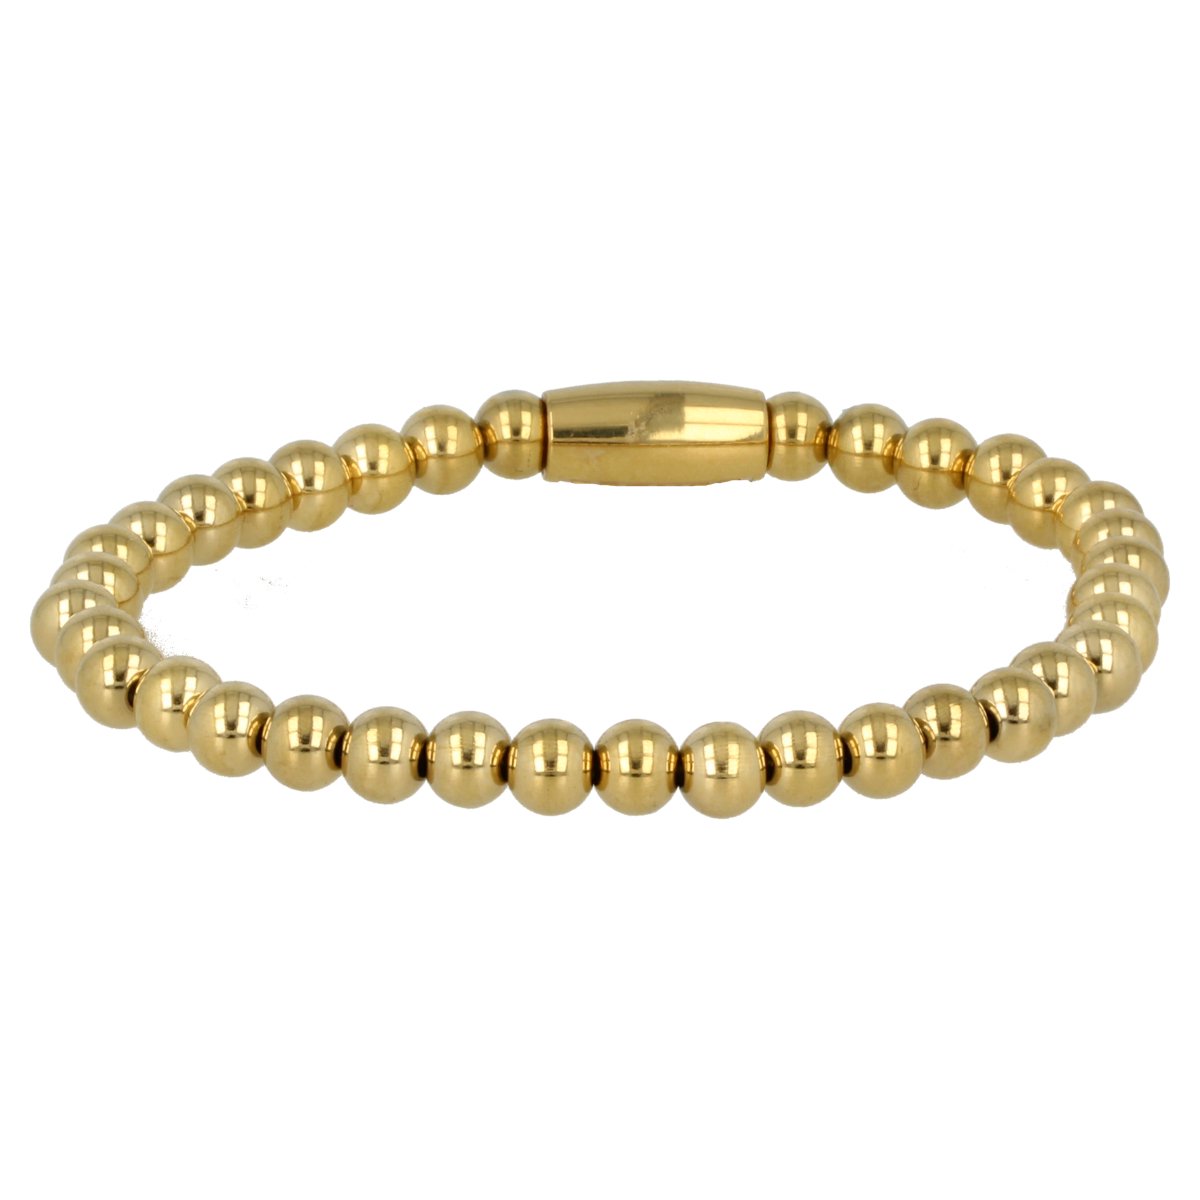 *Elastische armband met 5mm edelstalen balletjes - Flexibele gouden armband met 5 mm grote edelstalen balletjes - Met luxe cadeauverpakking